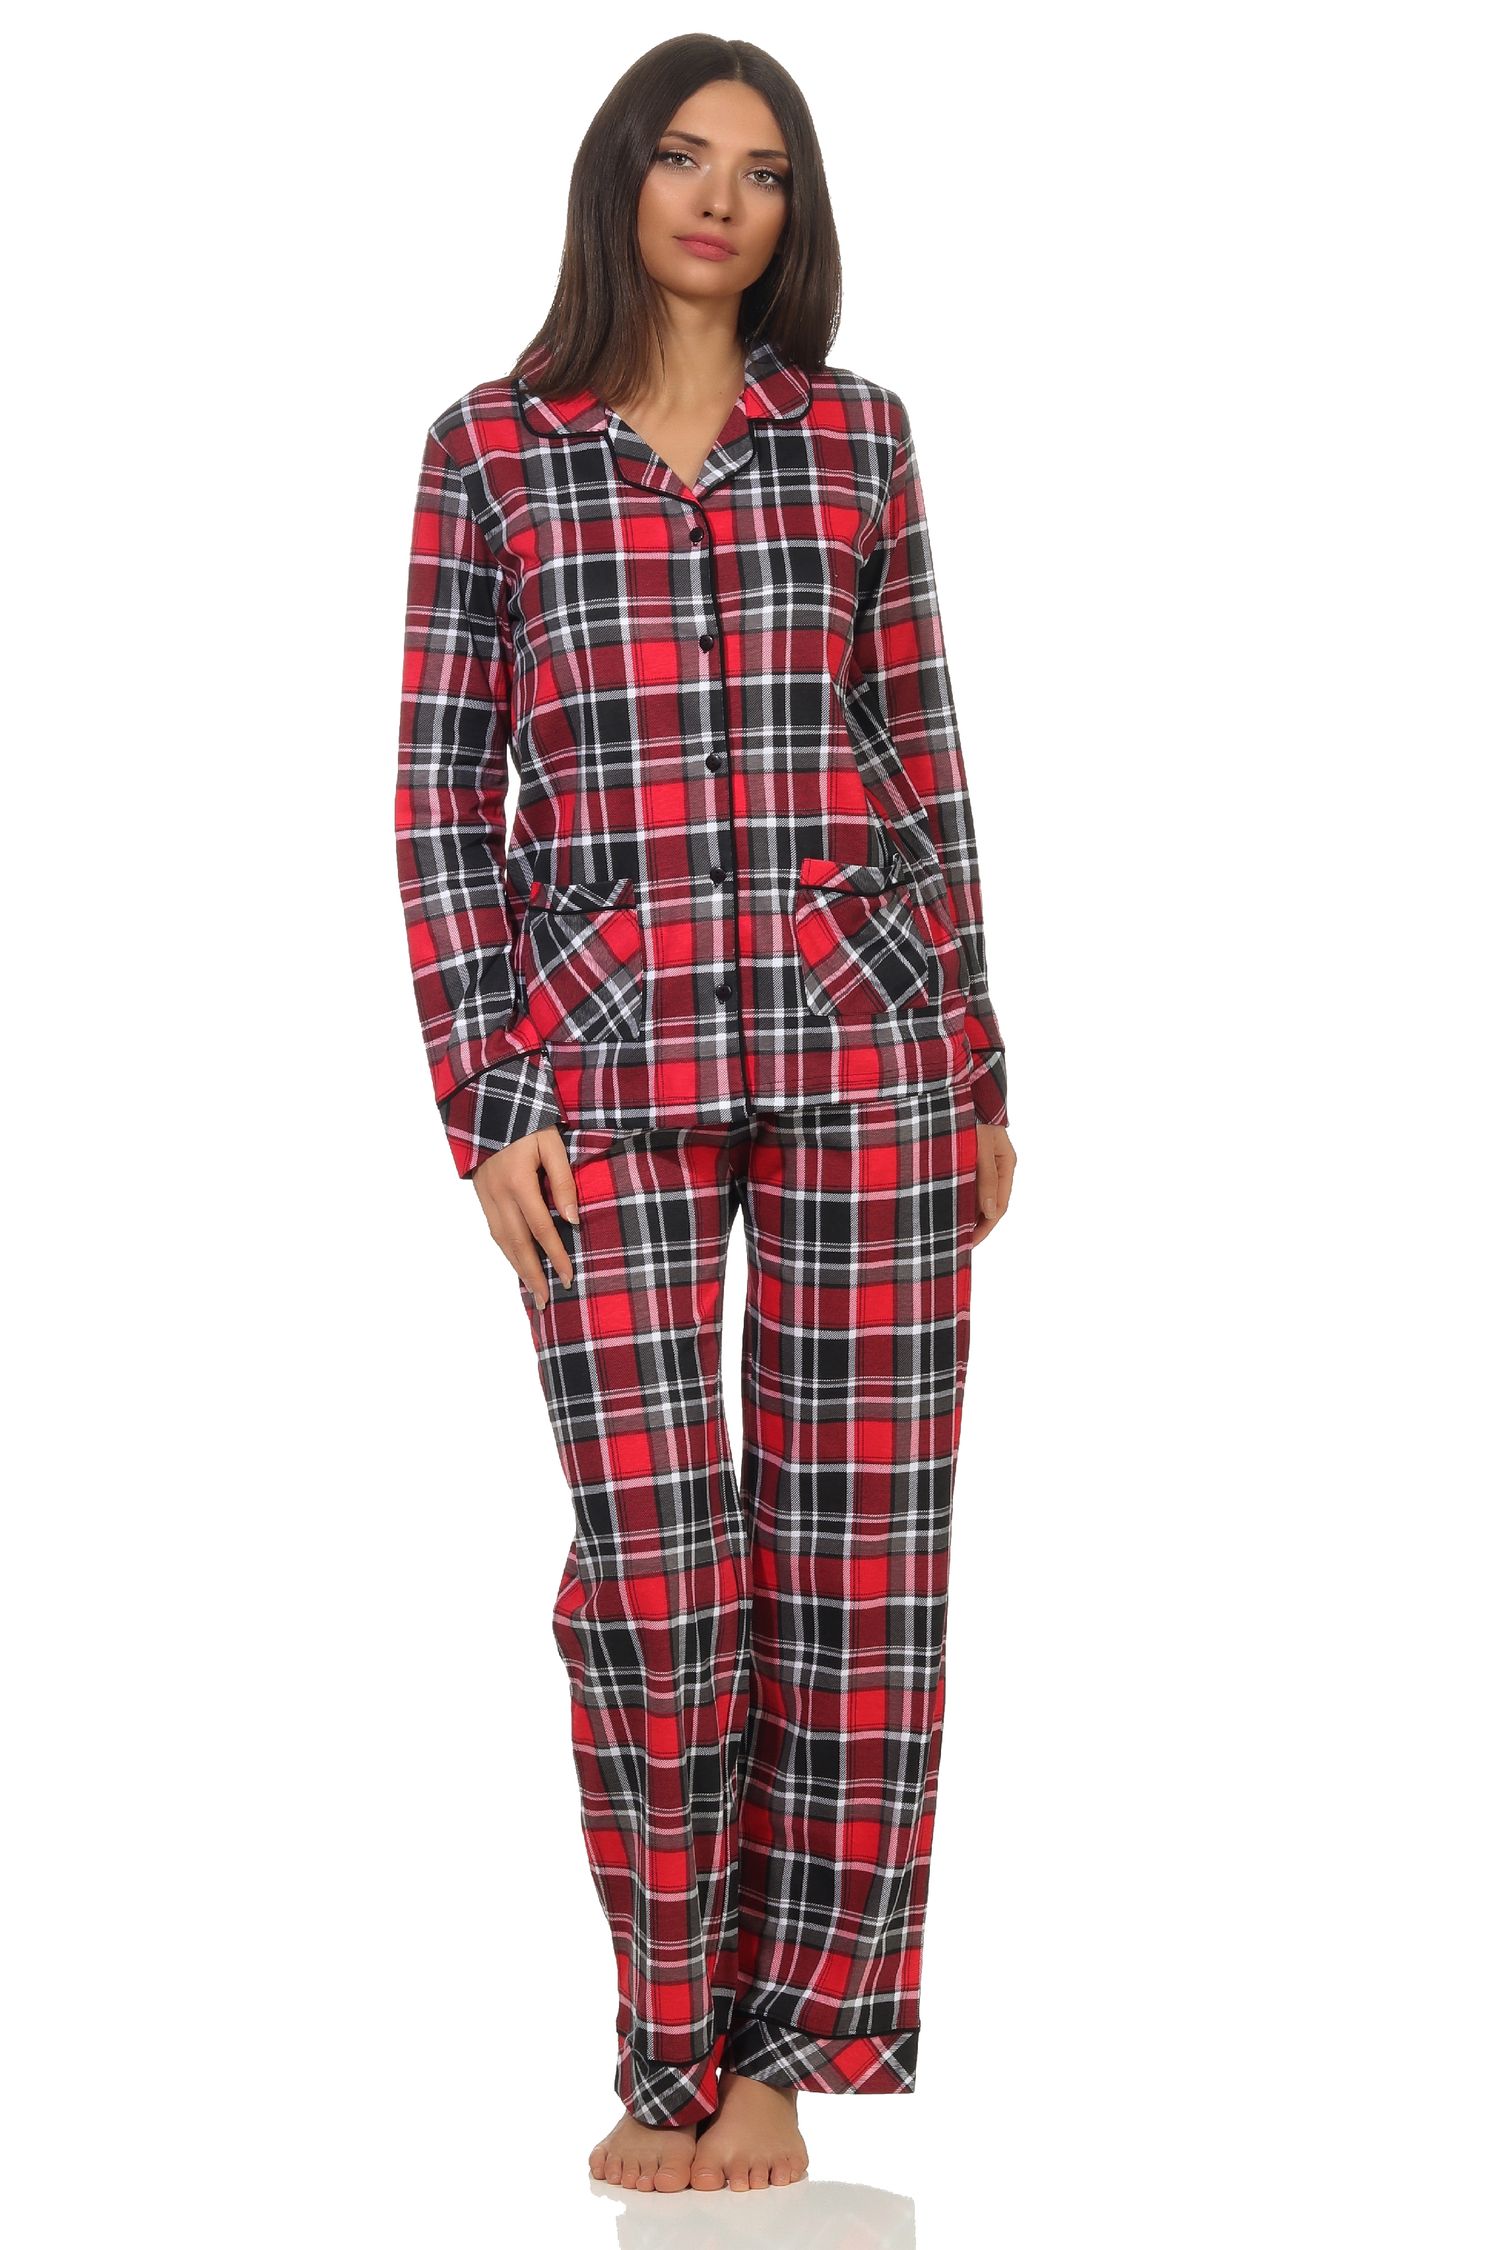 Damen Pyjama in Karo Optik zum durchknöpfen in Single Jersey Qualität - auch in Übergrößen